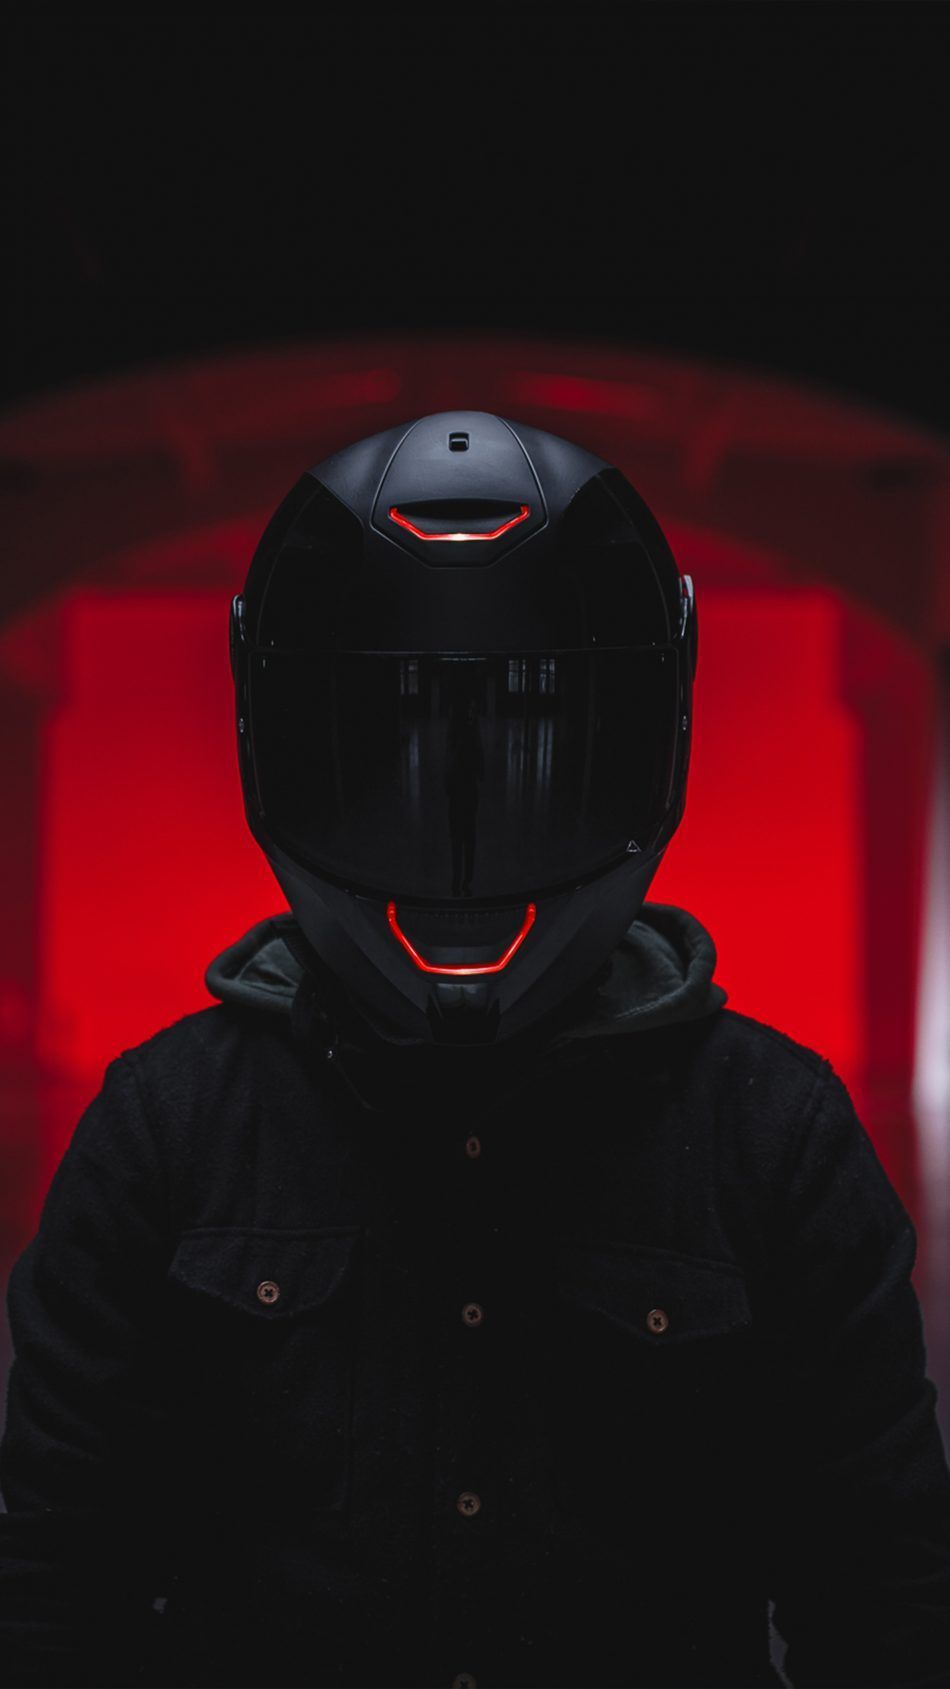 Biker Helmet Red Light 4K Ultra HD Mobile Wallpaper. Biker helmets, Super bikes, Super luxury cars